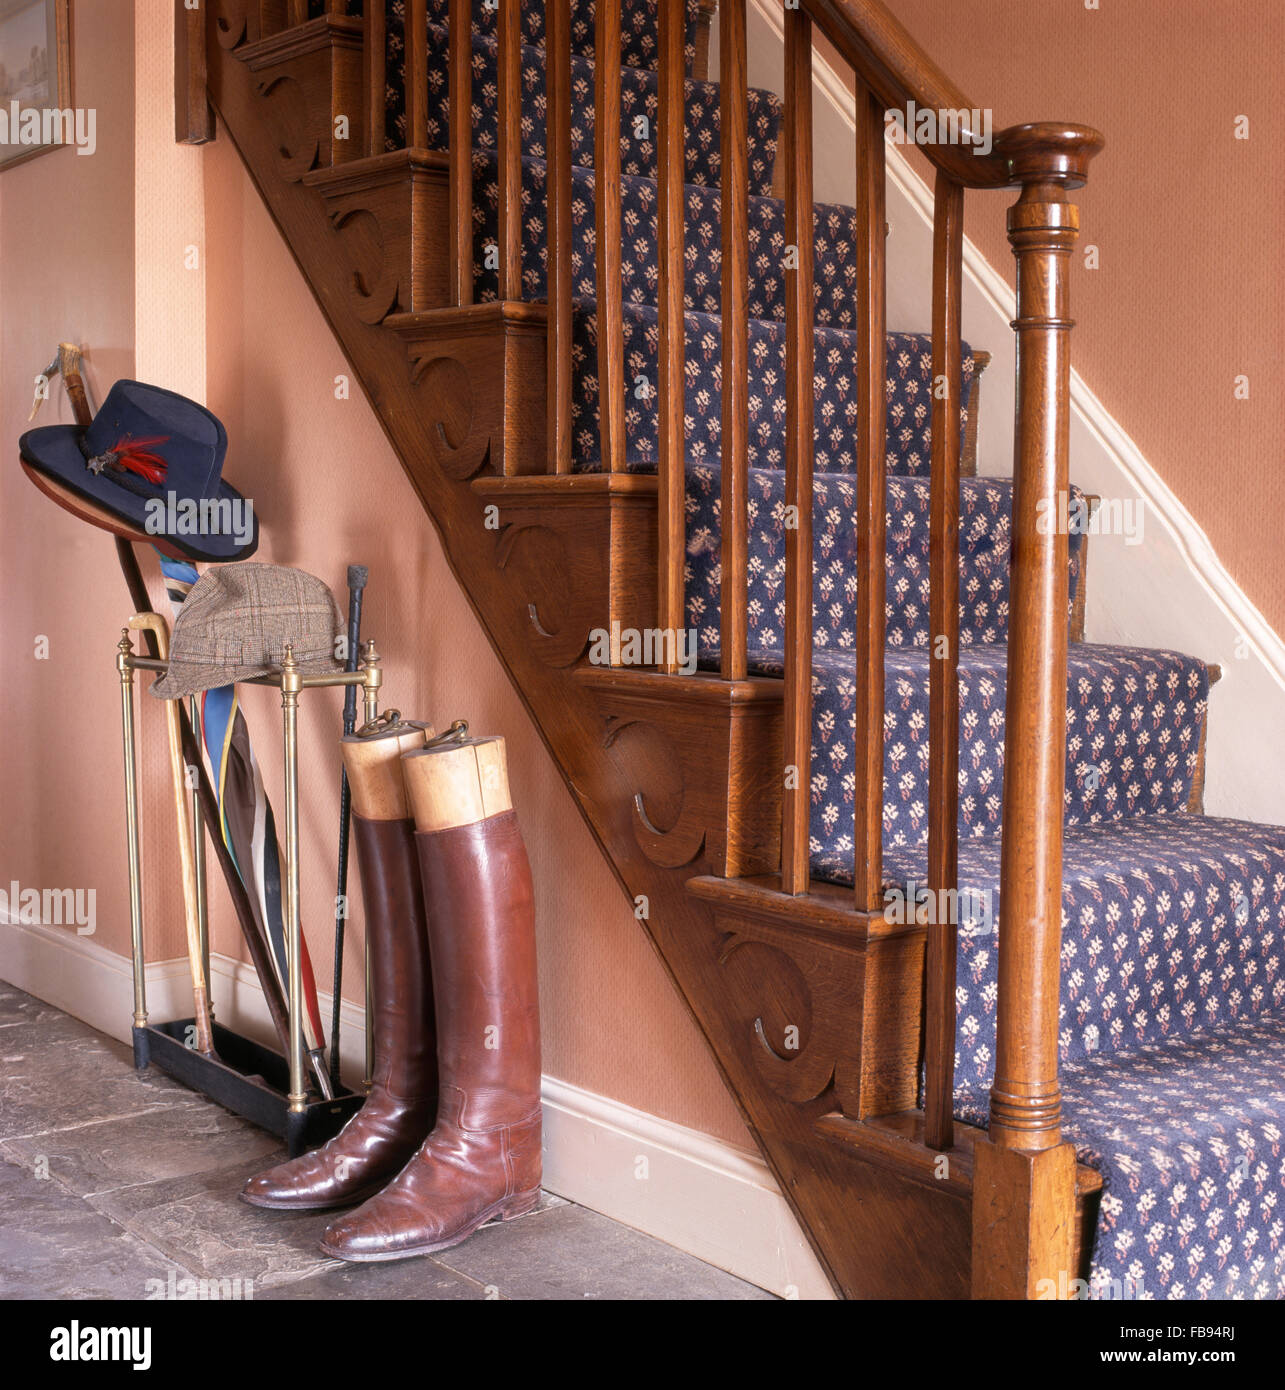 Bottes d'équitation en cuir au pied de l'escalier avec tapis à motifs bleu Banque D'Images